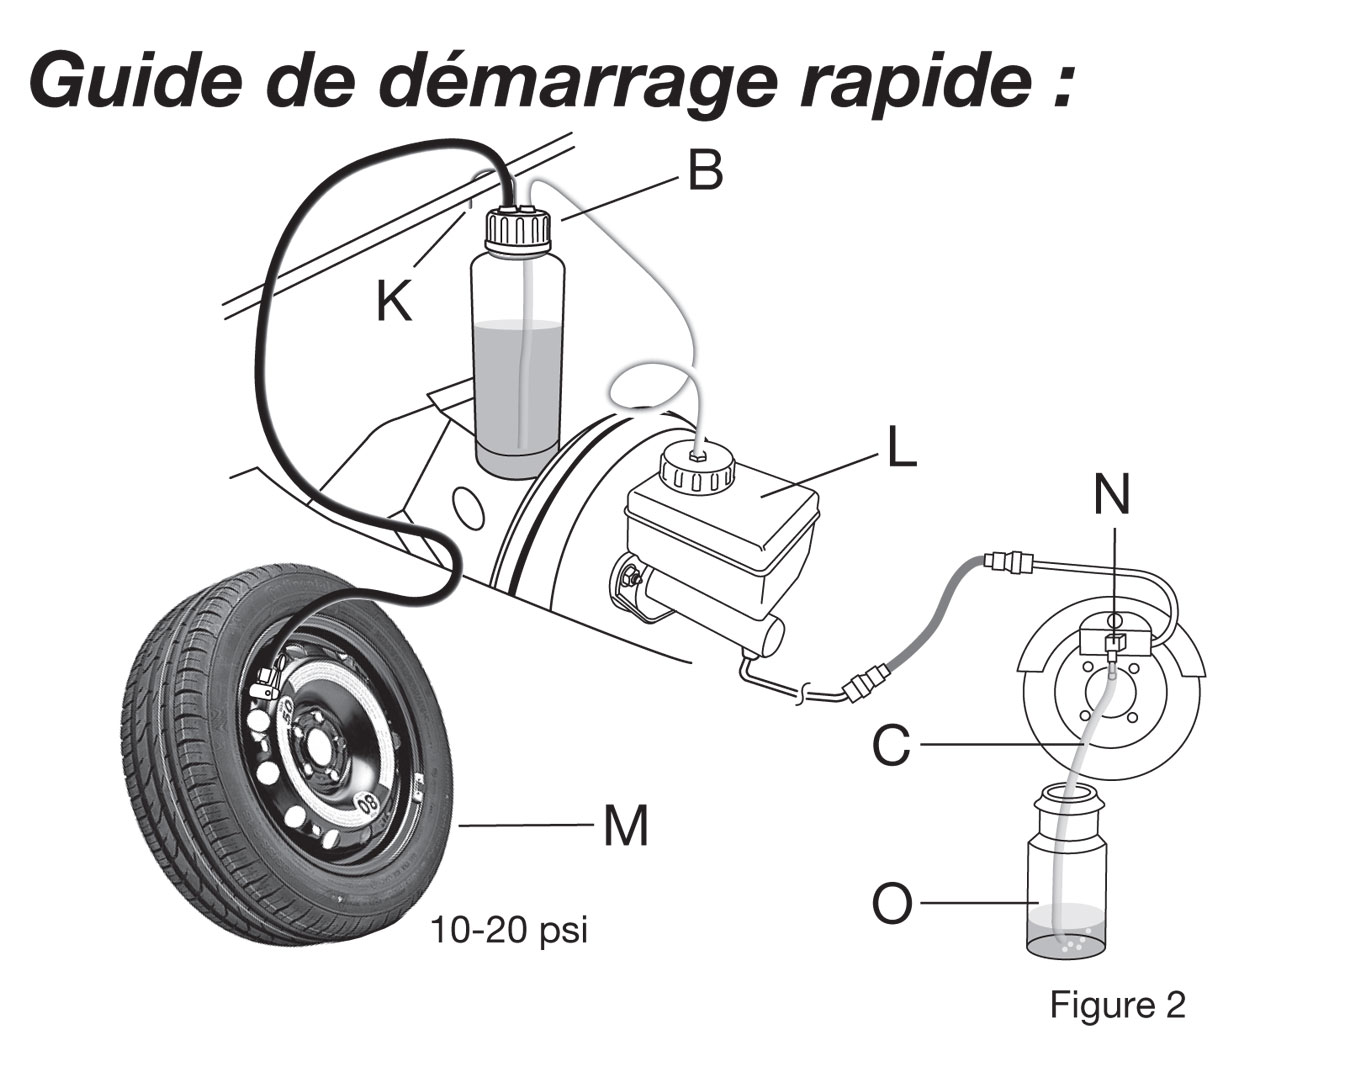 Purge et remplacement du liquide de frein (liquide de frein inclus)